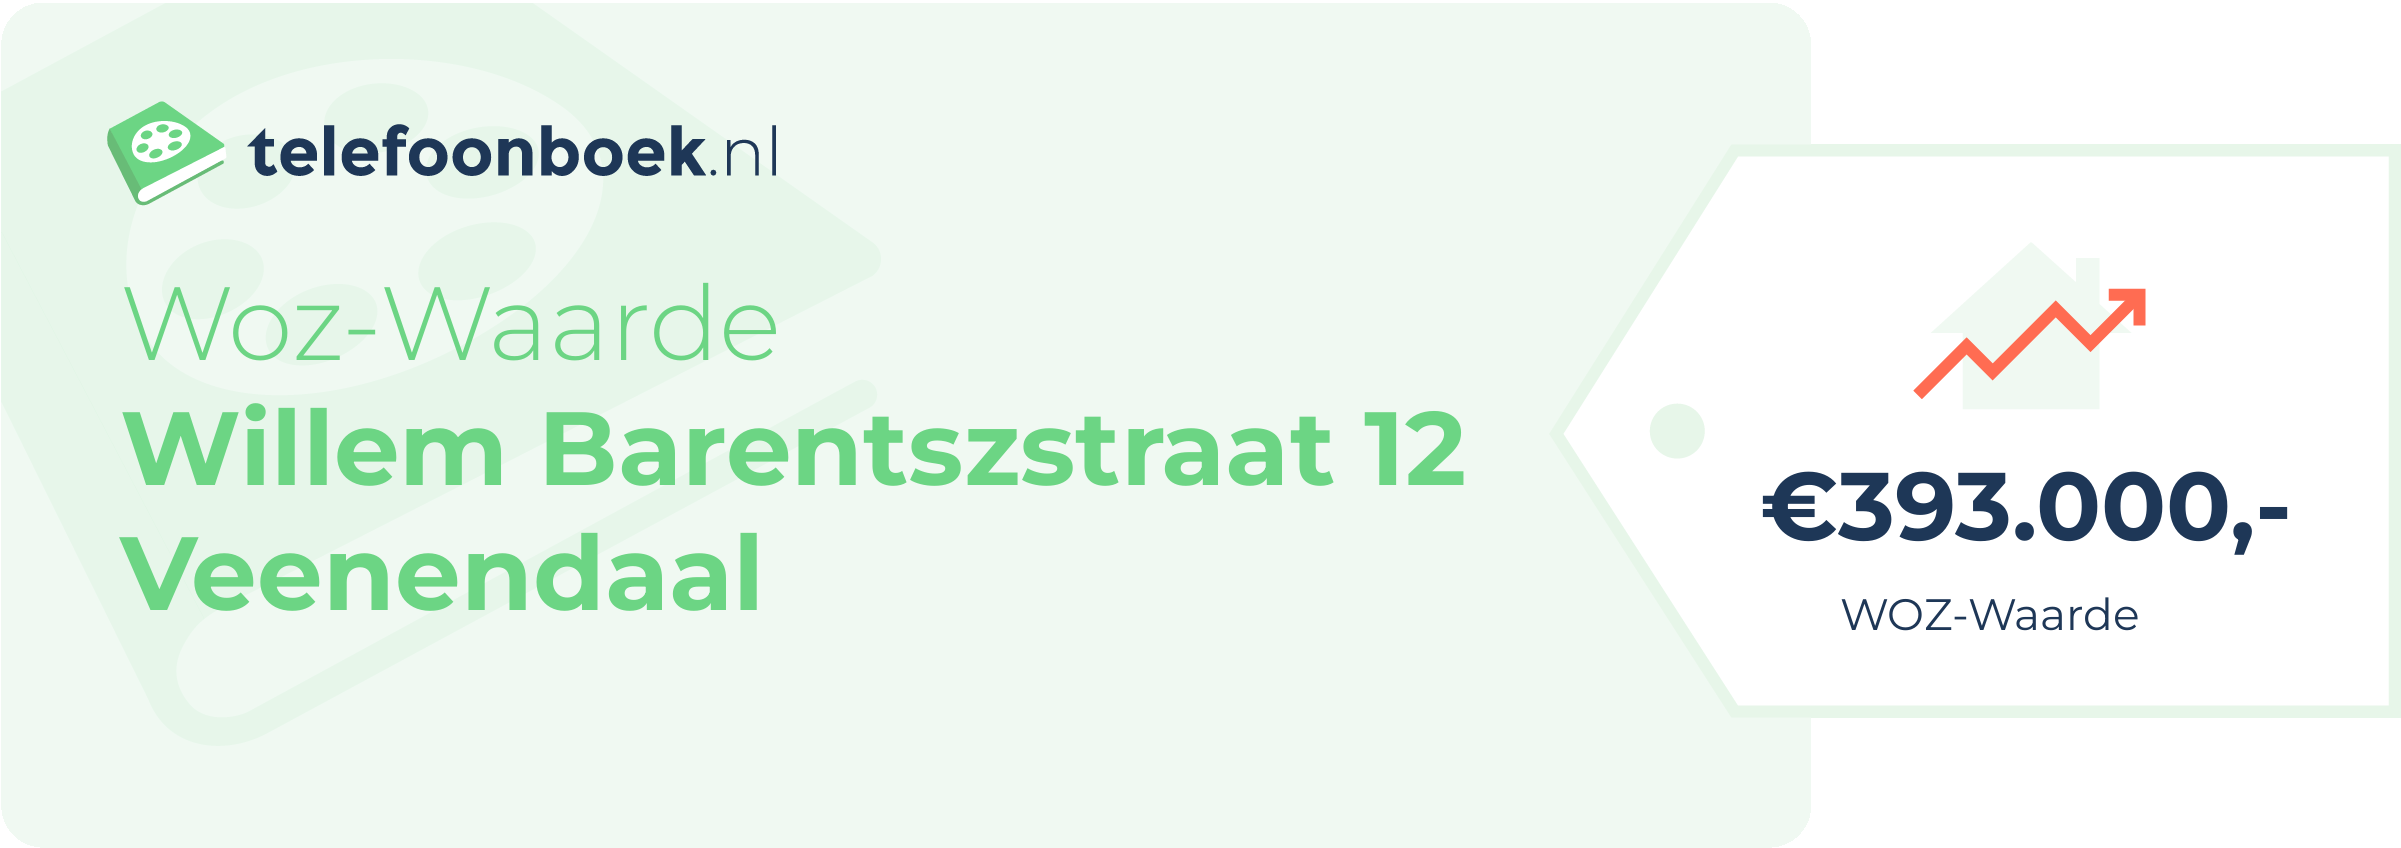 WOZ-waarde Willem Barentszstraat 12 Veenendaal